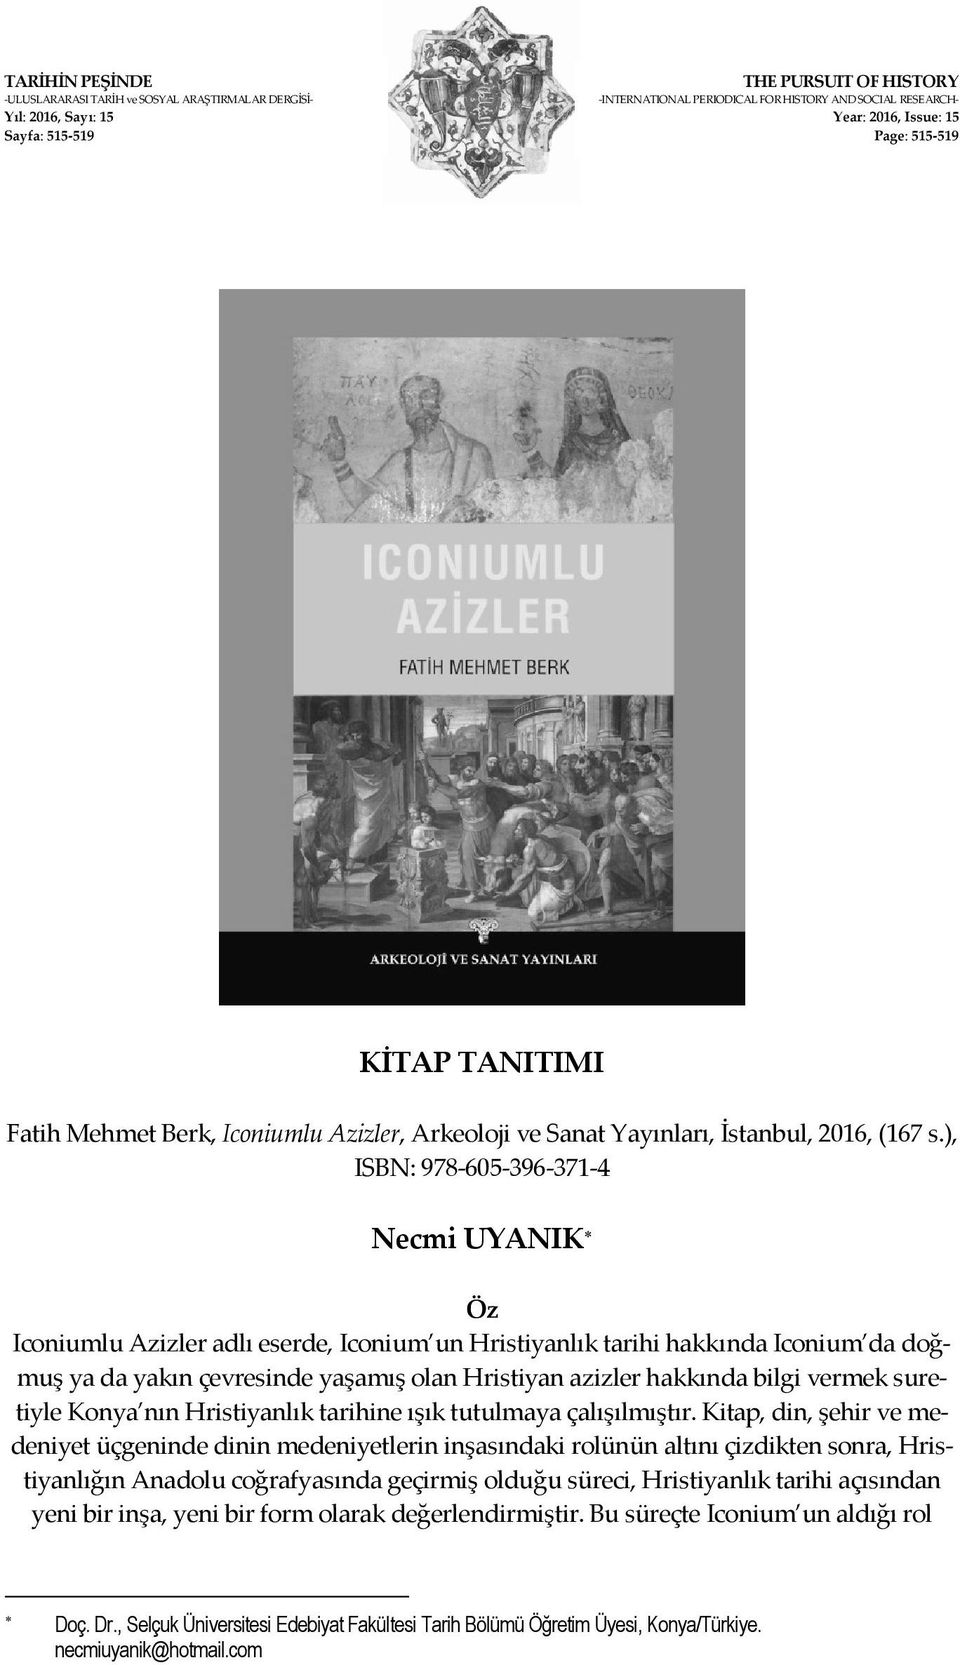 ), ISBN: 978 605 396 371 4 Necmi UYANIK Öz Iconiumlu Azizler adlı eserde, Iconium un Hristiyanlık tarihi hakkında Iconium da doğmuş ya da yakın çevresinde yaşamış olan Hristiyan azizler hakkında